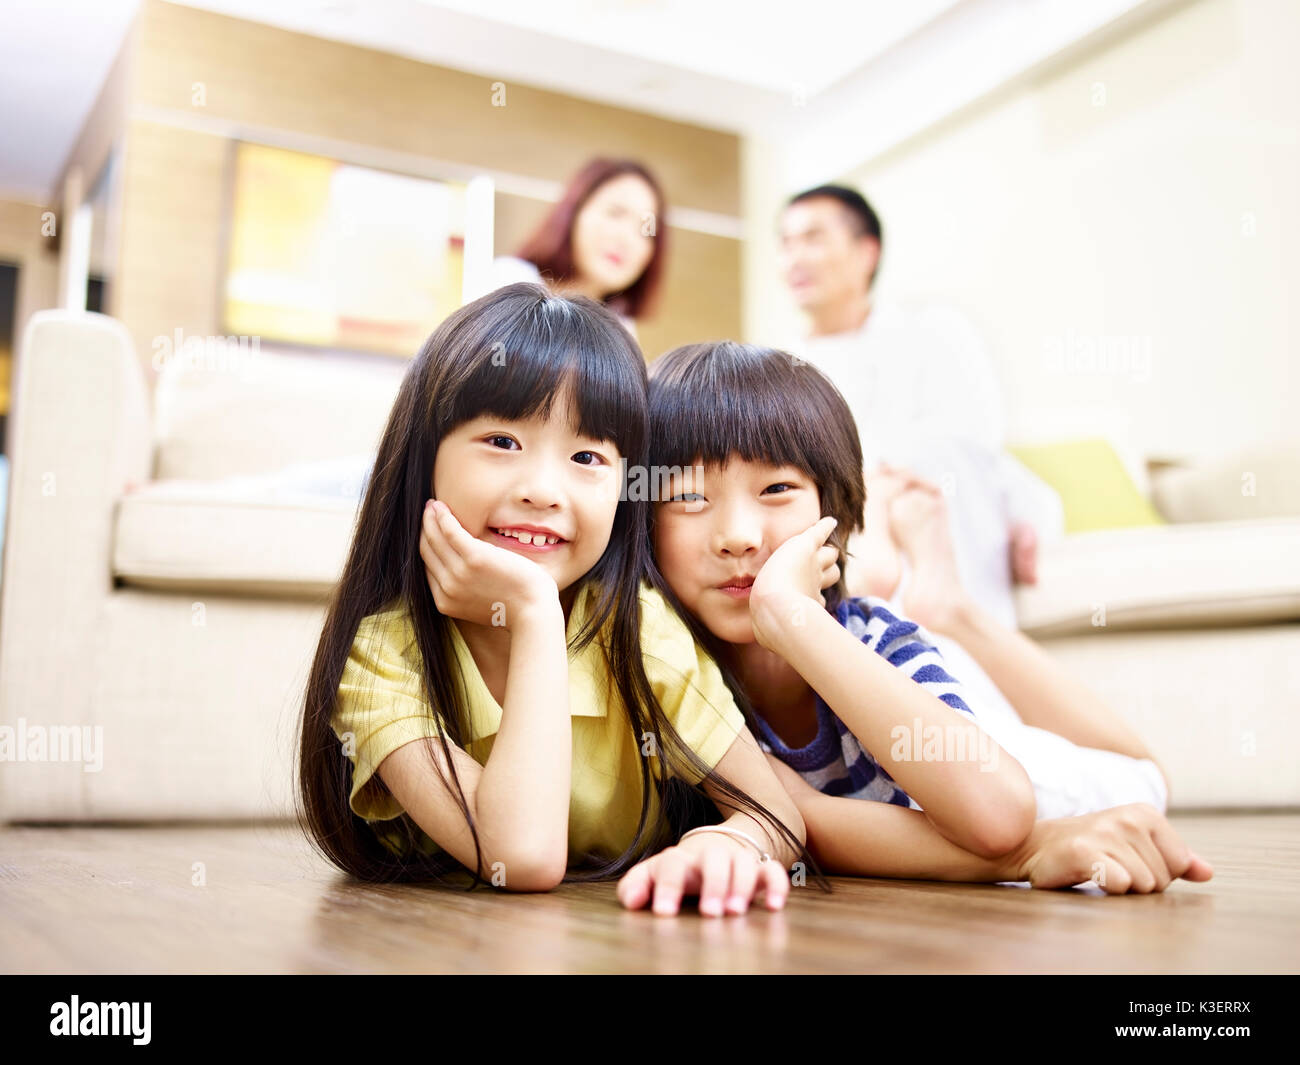 Frère et soeur d'asie se trouvant à l'avant sur le plancher avec les parents dans l'arrière-plan. Banque D'Images